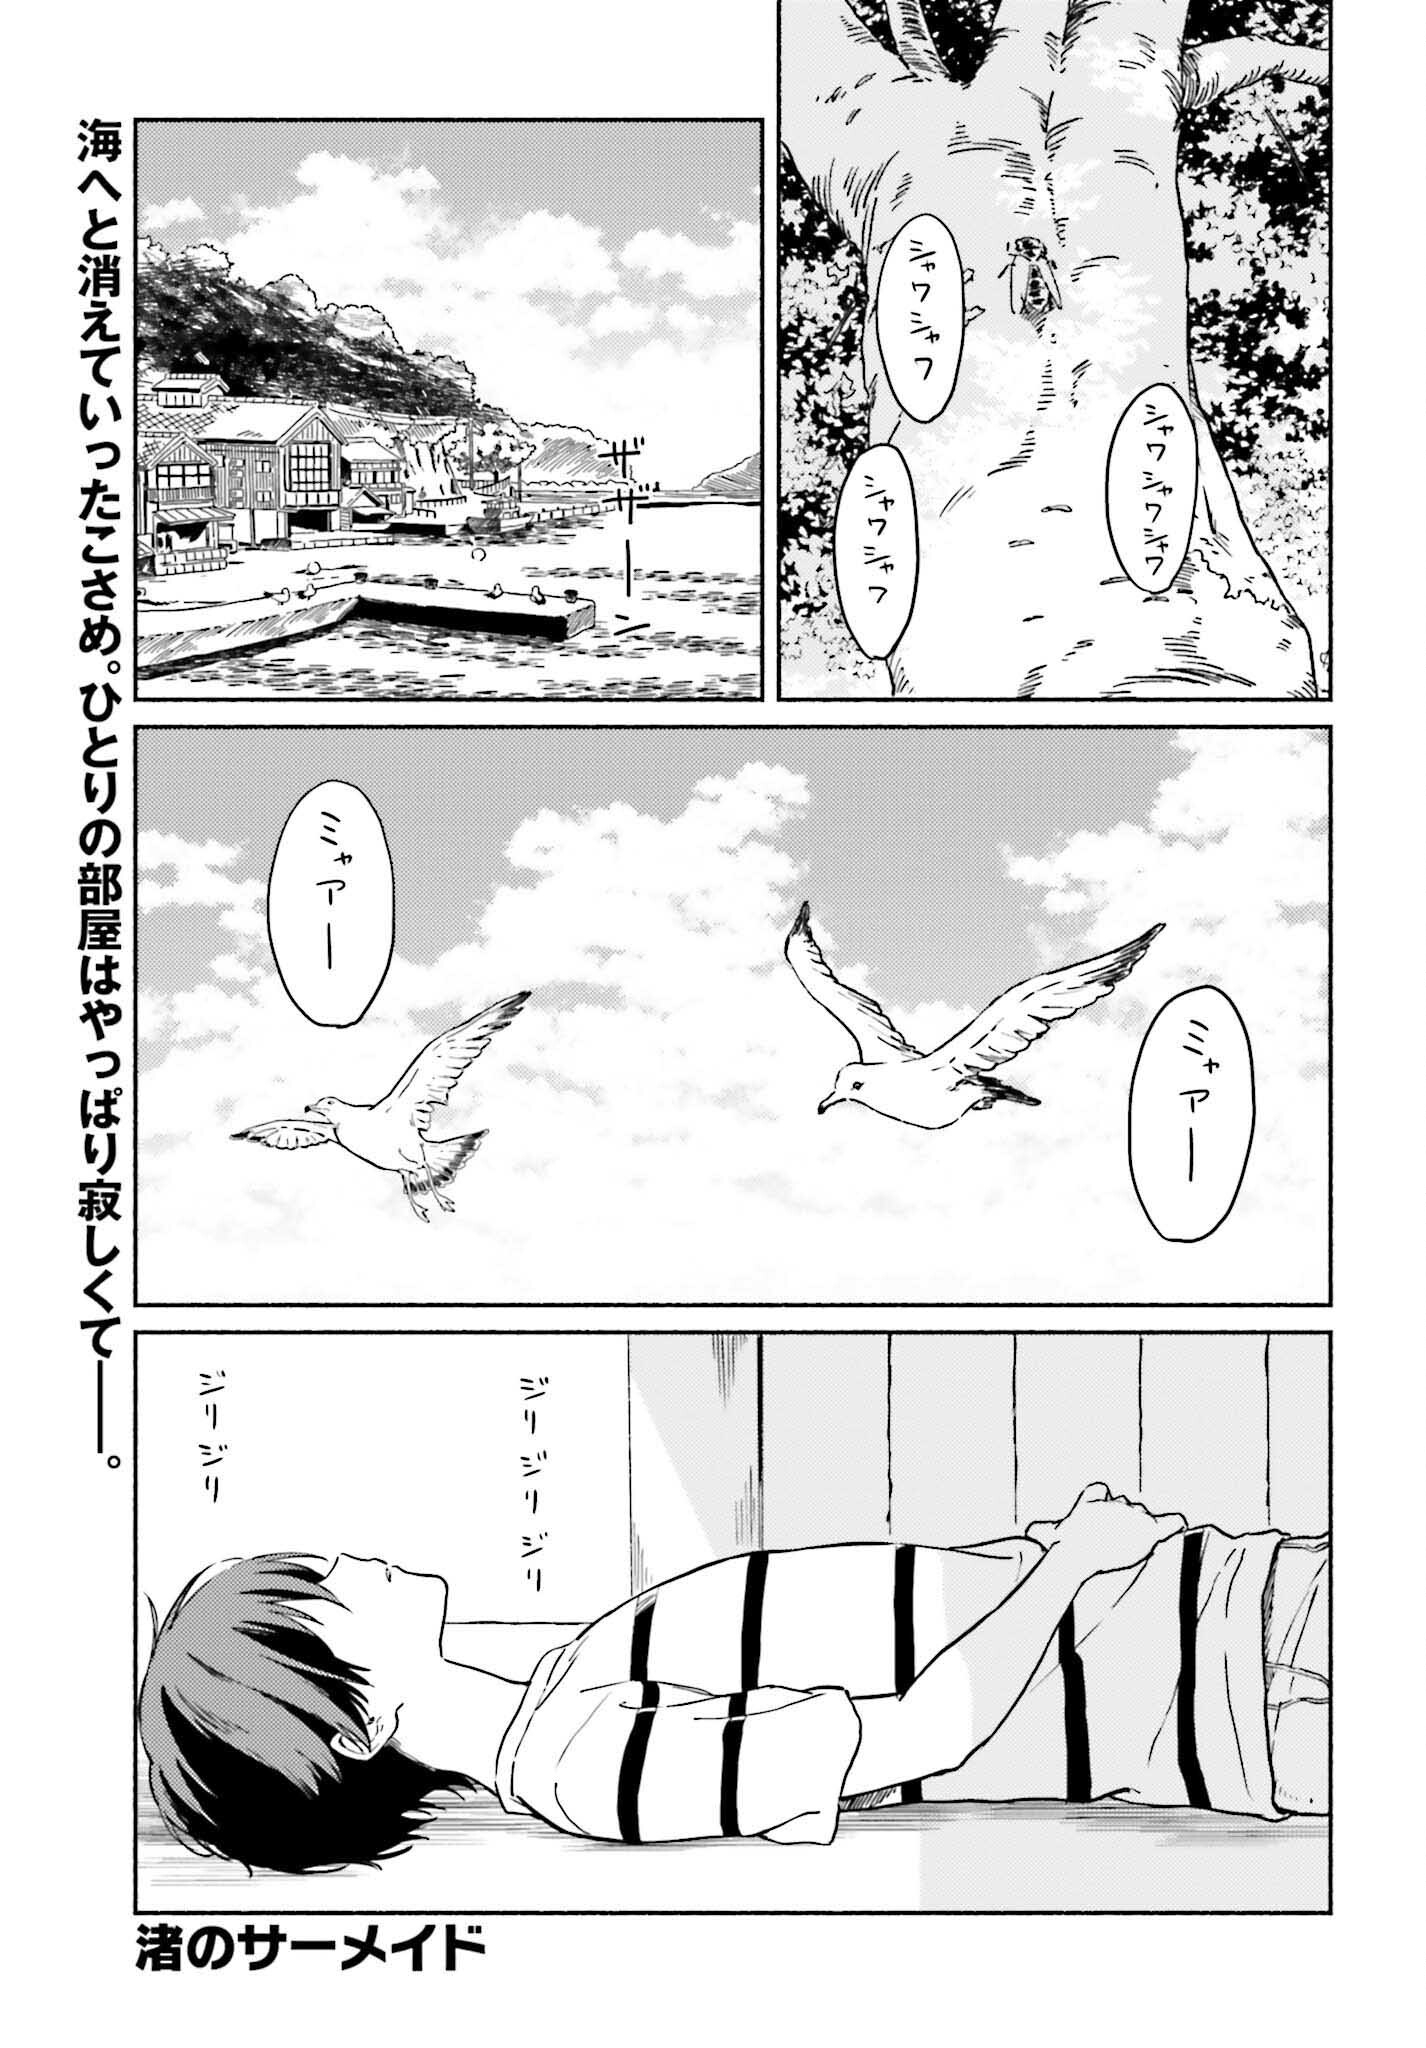 Nagisa no Shark Maid - Chapter 13 - Page 1